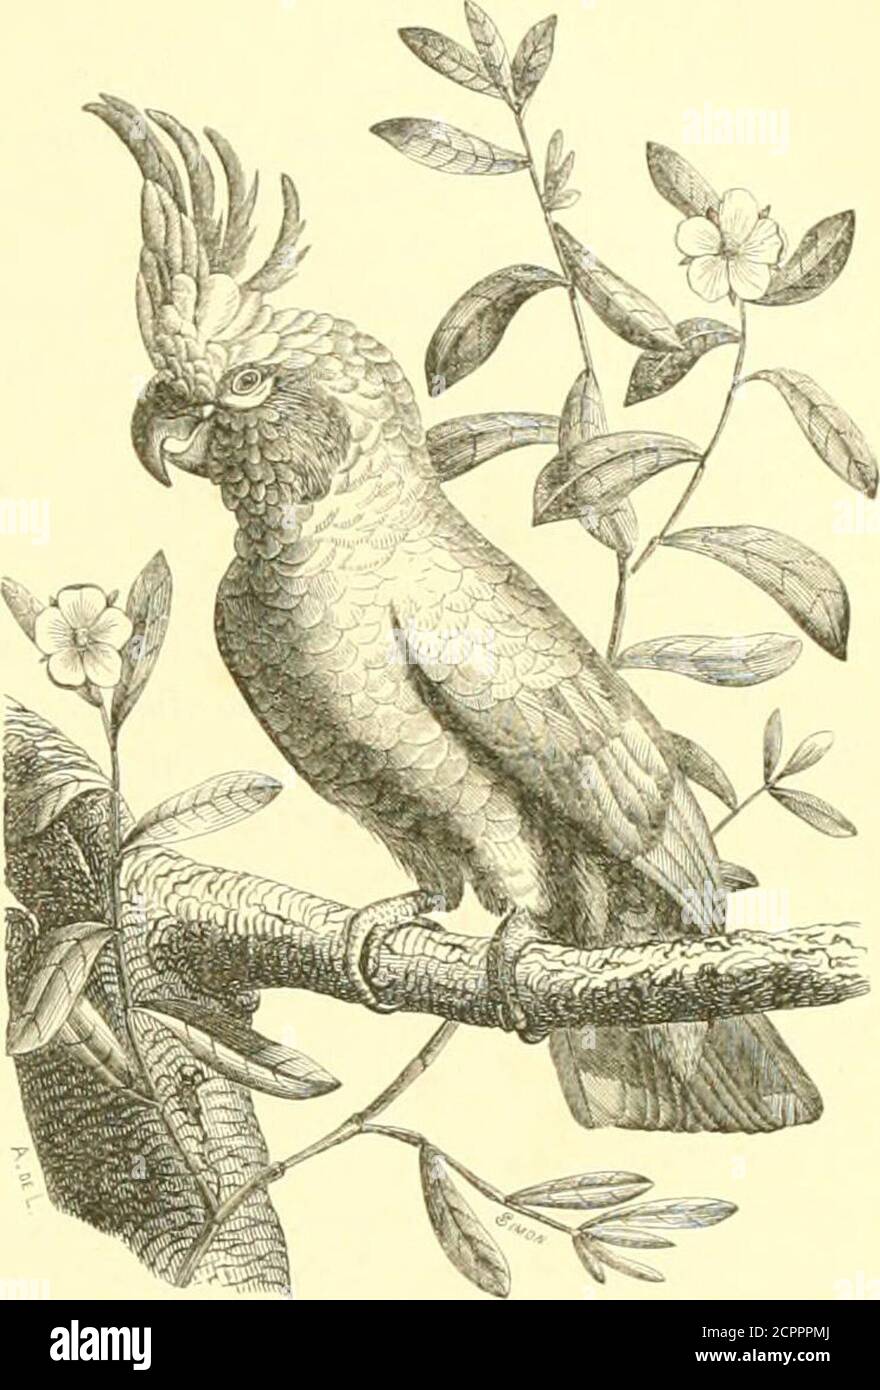 . Histoire naturelle des oiseaux : suivant a classification de Isidore Geoffroy-Saint-Hilaire ; avec l'indication de leurs moeurs et de leurs rapports avec les arts, le commerce et l'agriculture . f-V; y ////Vf //f/. / r/, A. &gt; f///f /7 )• MIM,K DKS PSITT VCIDKS. I().&gt; i[l ;irr(iiiili( ■iiliiTiTiiilit i-;ir,lii. ciii-iMiiV, un |U (ciiaiiciri- au IkiuI : les narinepar les plumes du front ; les ailes sont aiguës ;la ipieue est courte, earri^e, égale; les tarsescoiuts et réticulés. Les Kakatoès sont des IMnM|uits des Indoet de lAustralie ; le fond de leur plumage estblanc, quelijuefois r Stock Photo